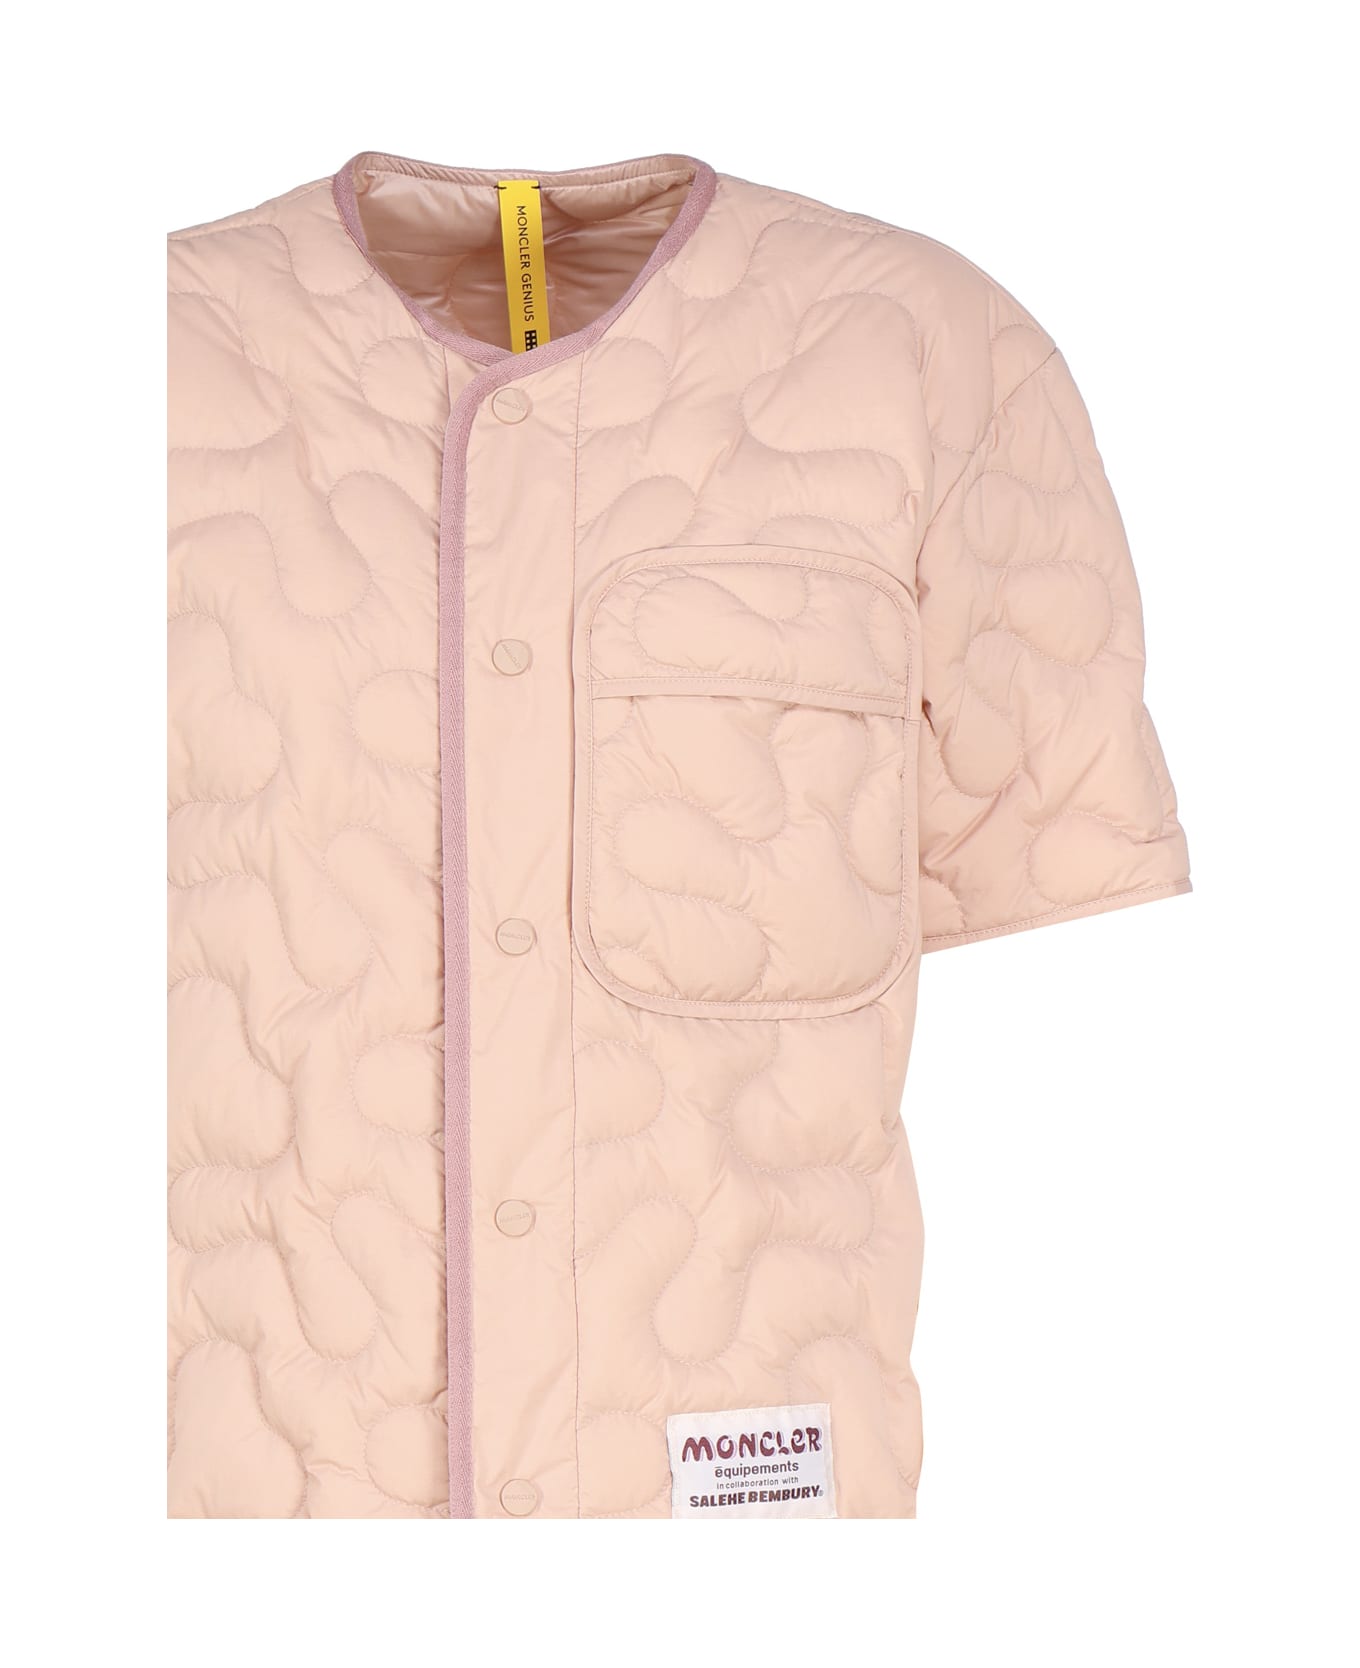 Moncler Genius Moncler X Salehe Bembury Padded Shirt - Pink